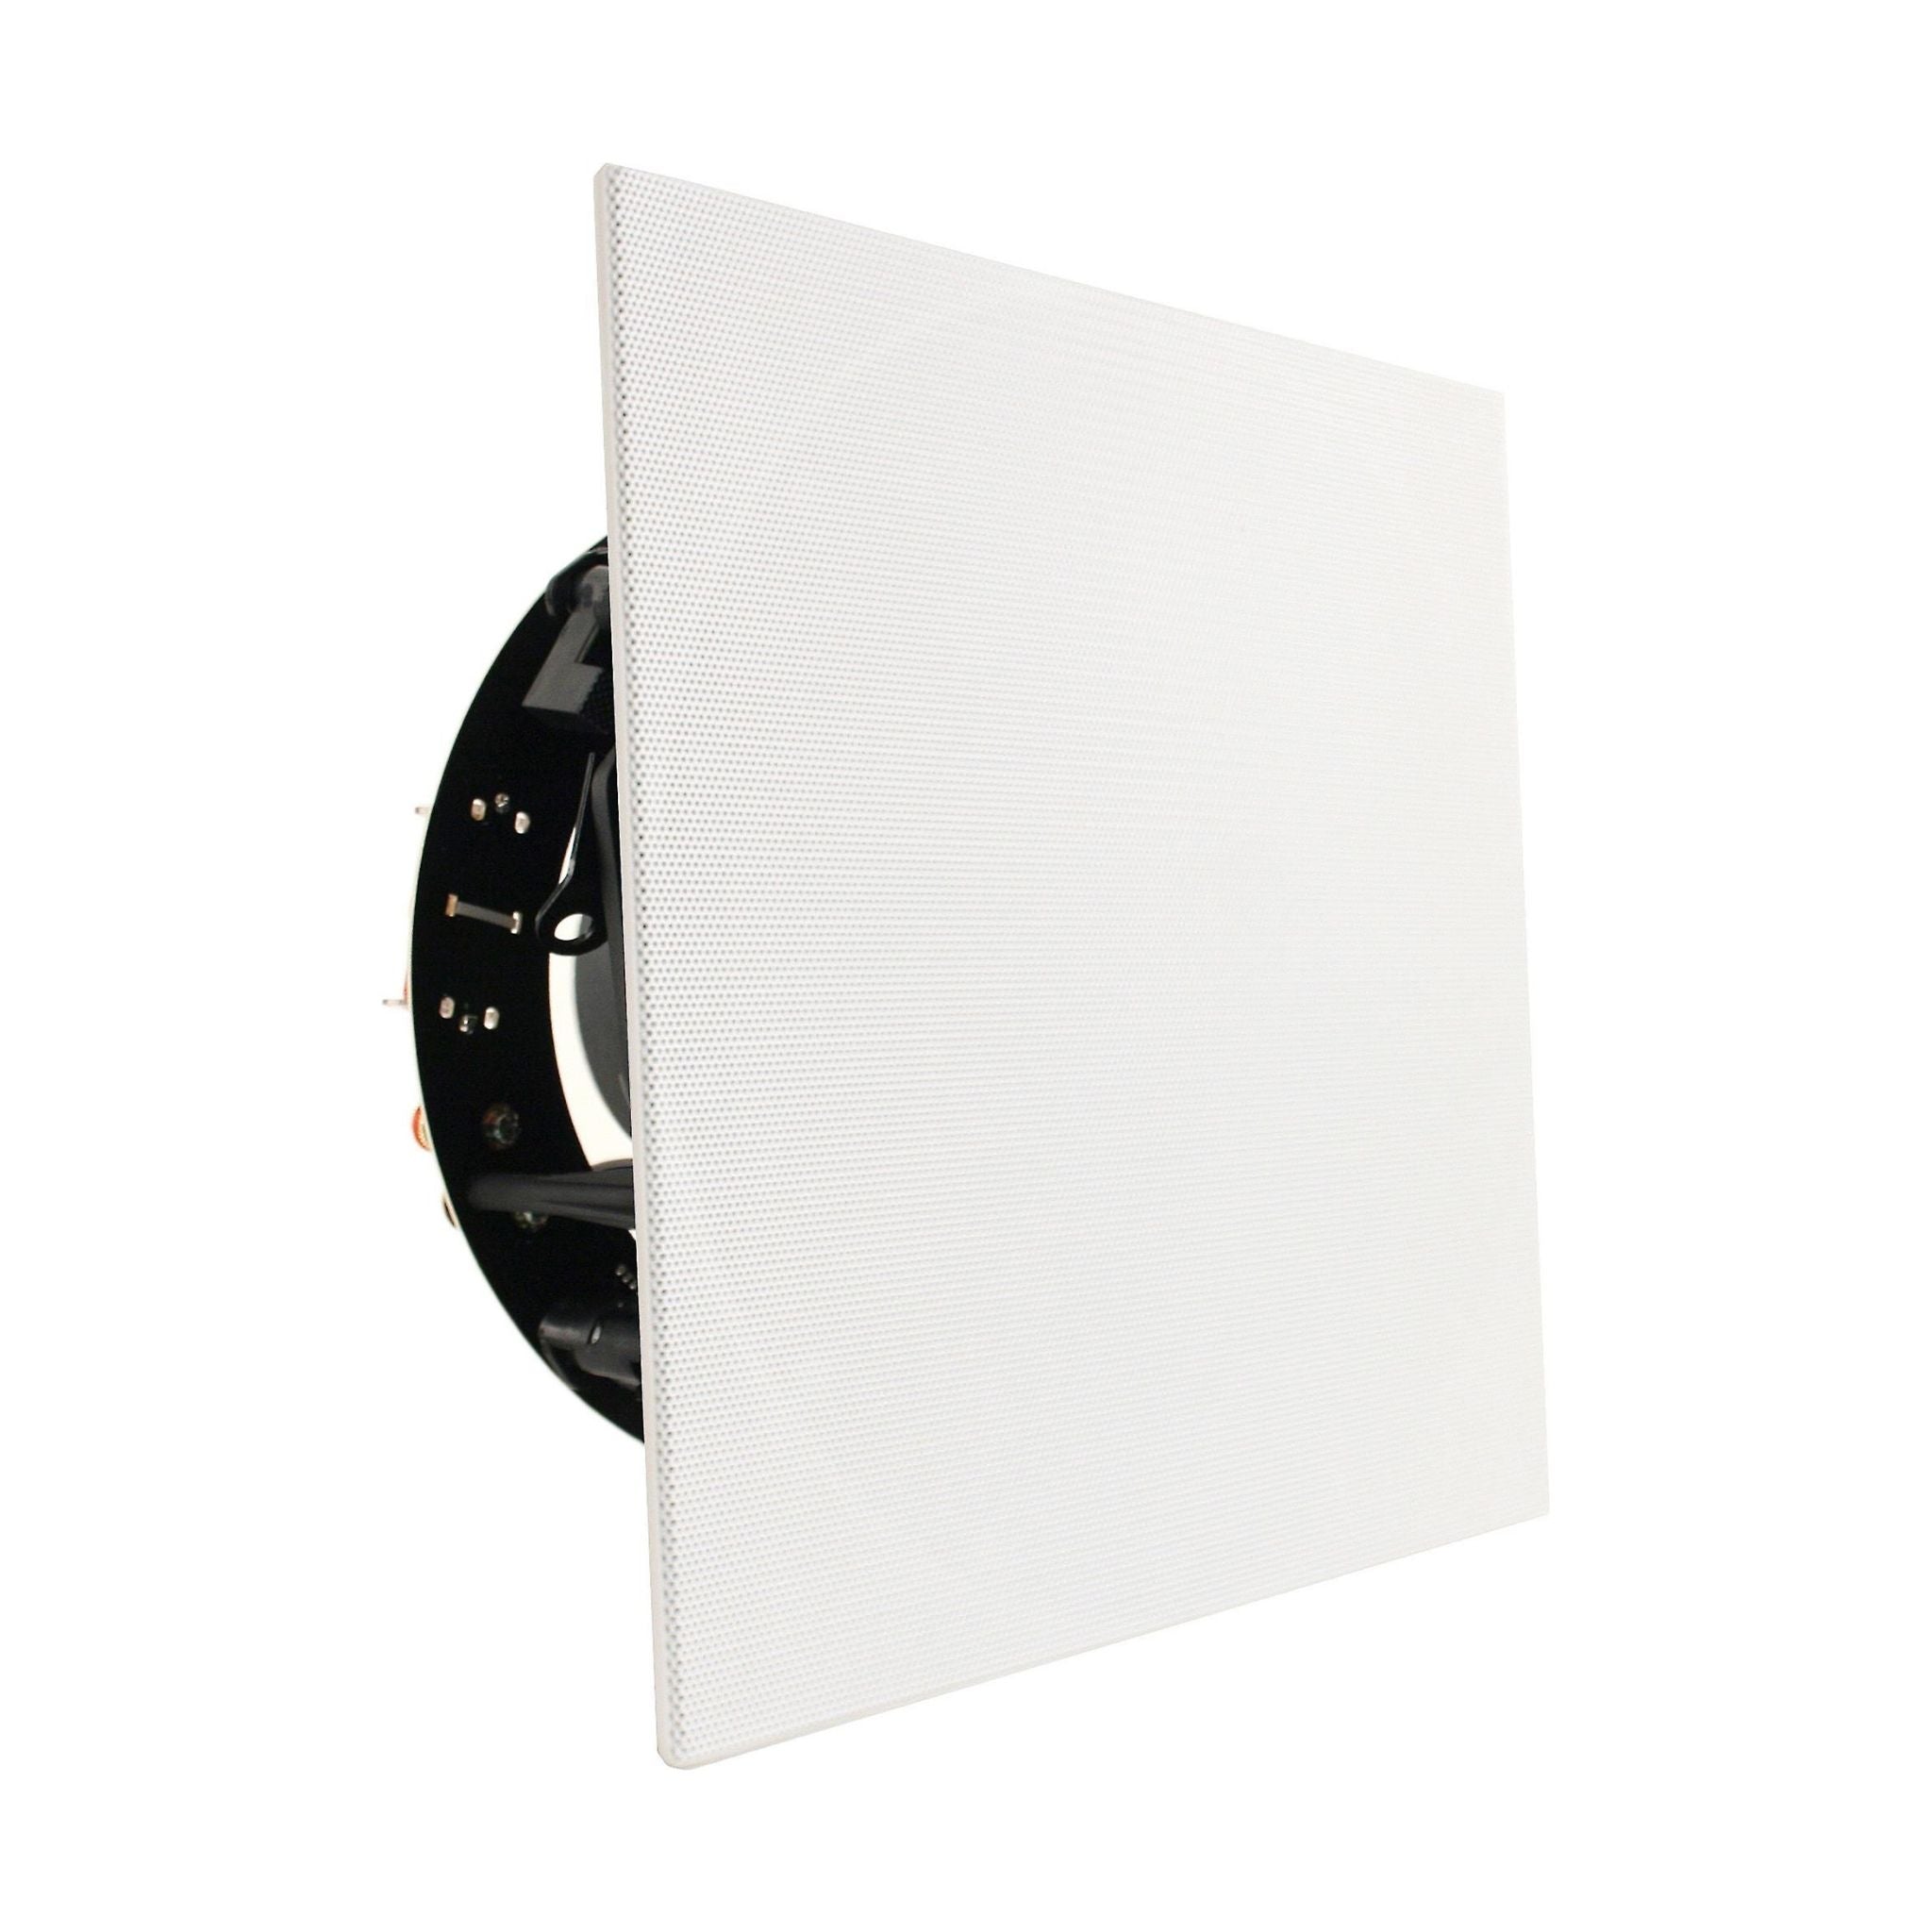 Revel C583 - In-Ceiling Speaker - Piece - AVStore